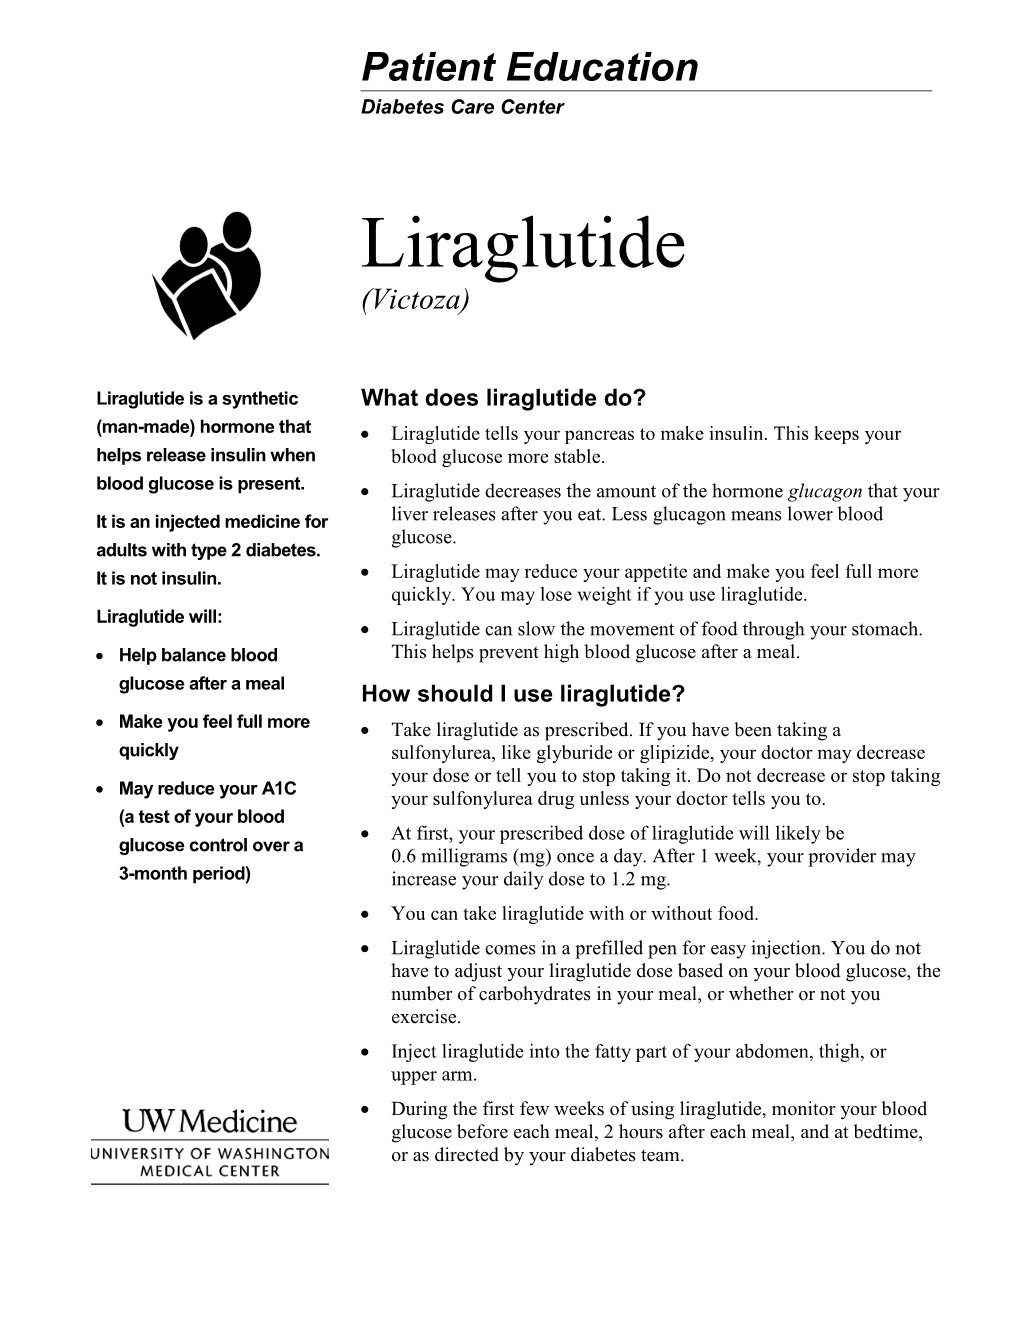 Liraglutide (Victoza)